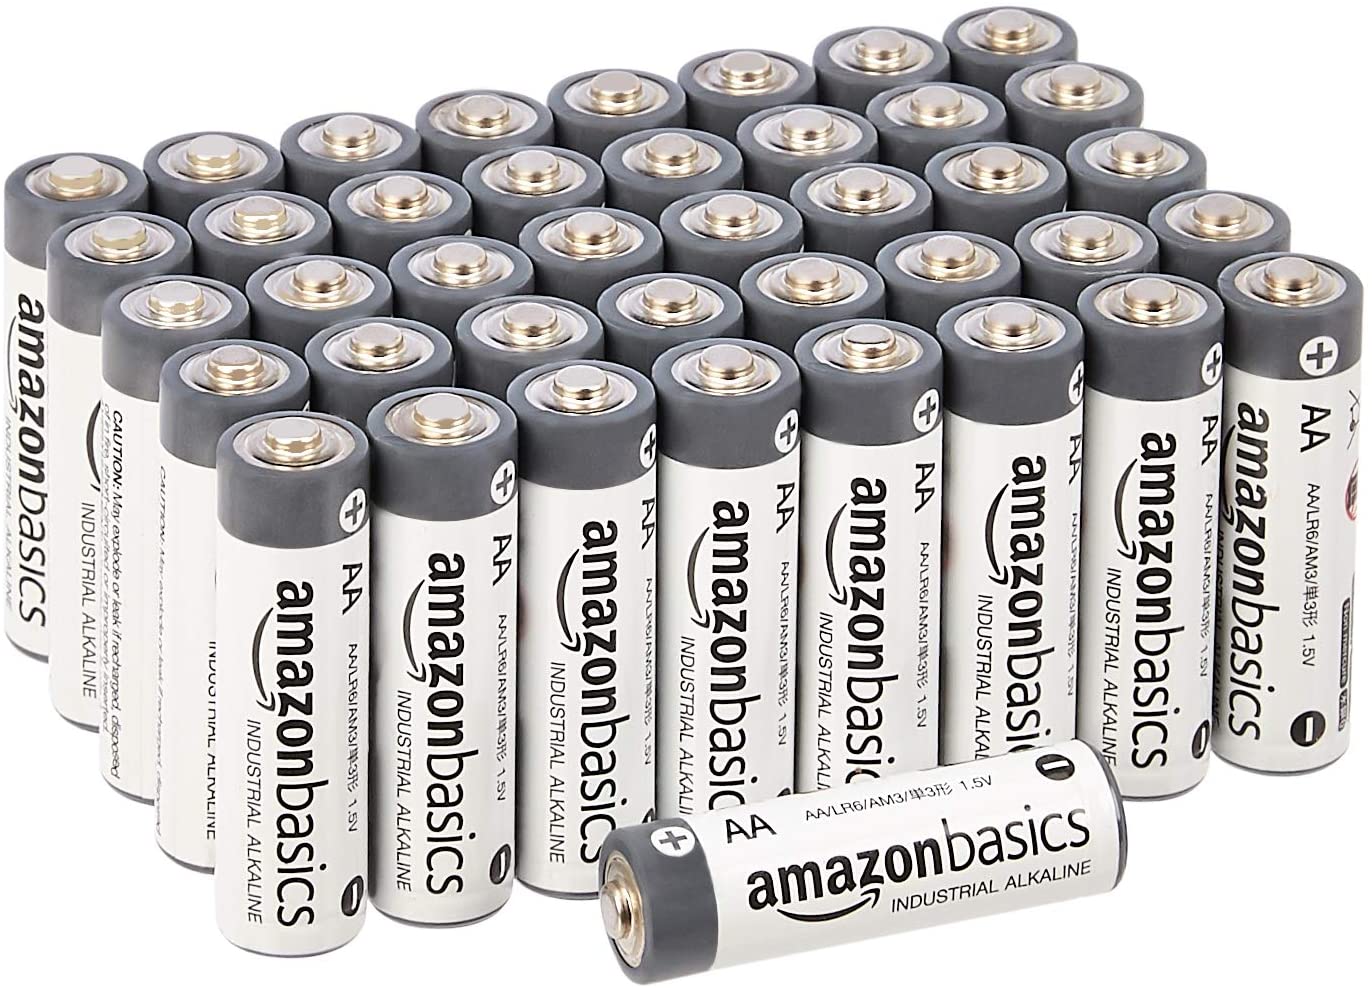 AmazonBasics Batterie industriali alcaline AA, confezione da 40